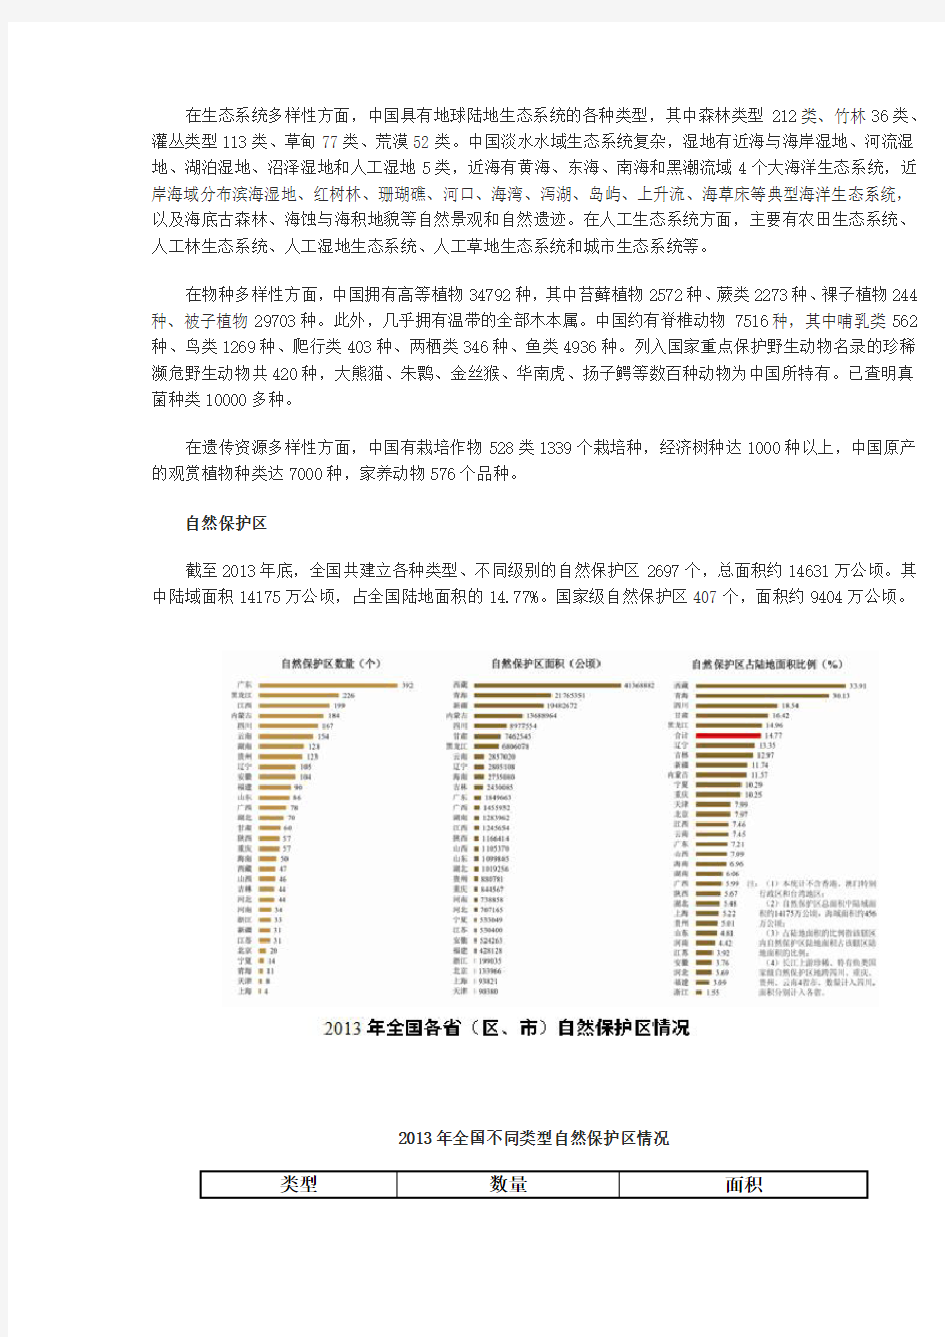 【环保部】2013年中国环境状况公报(自然生态环境)